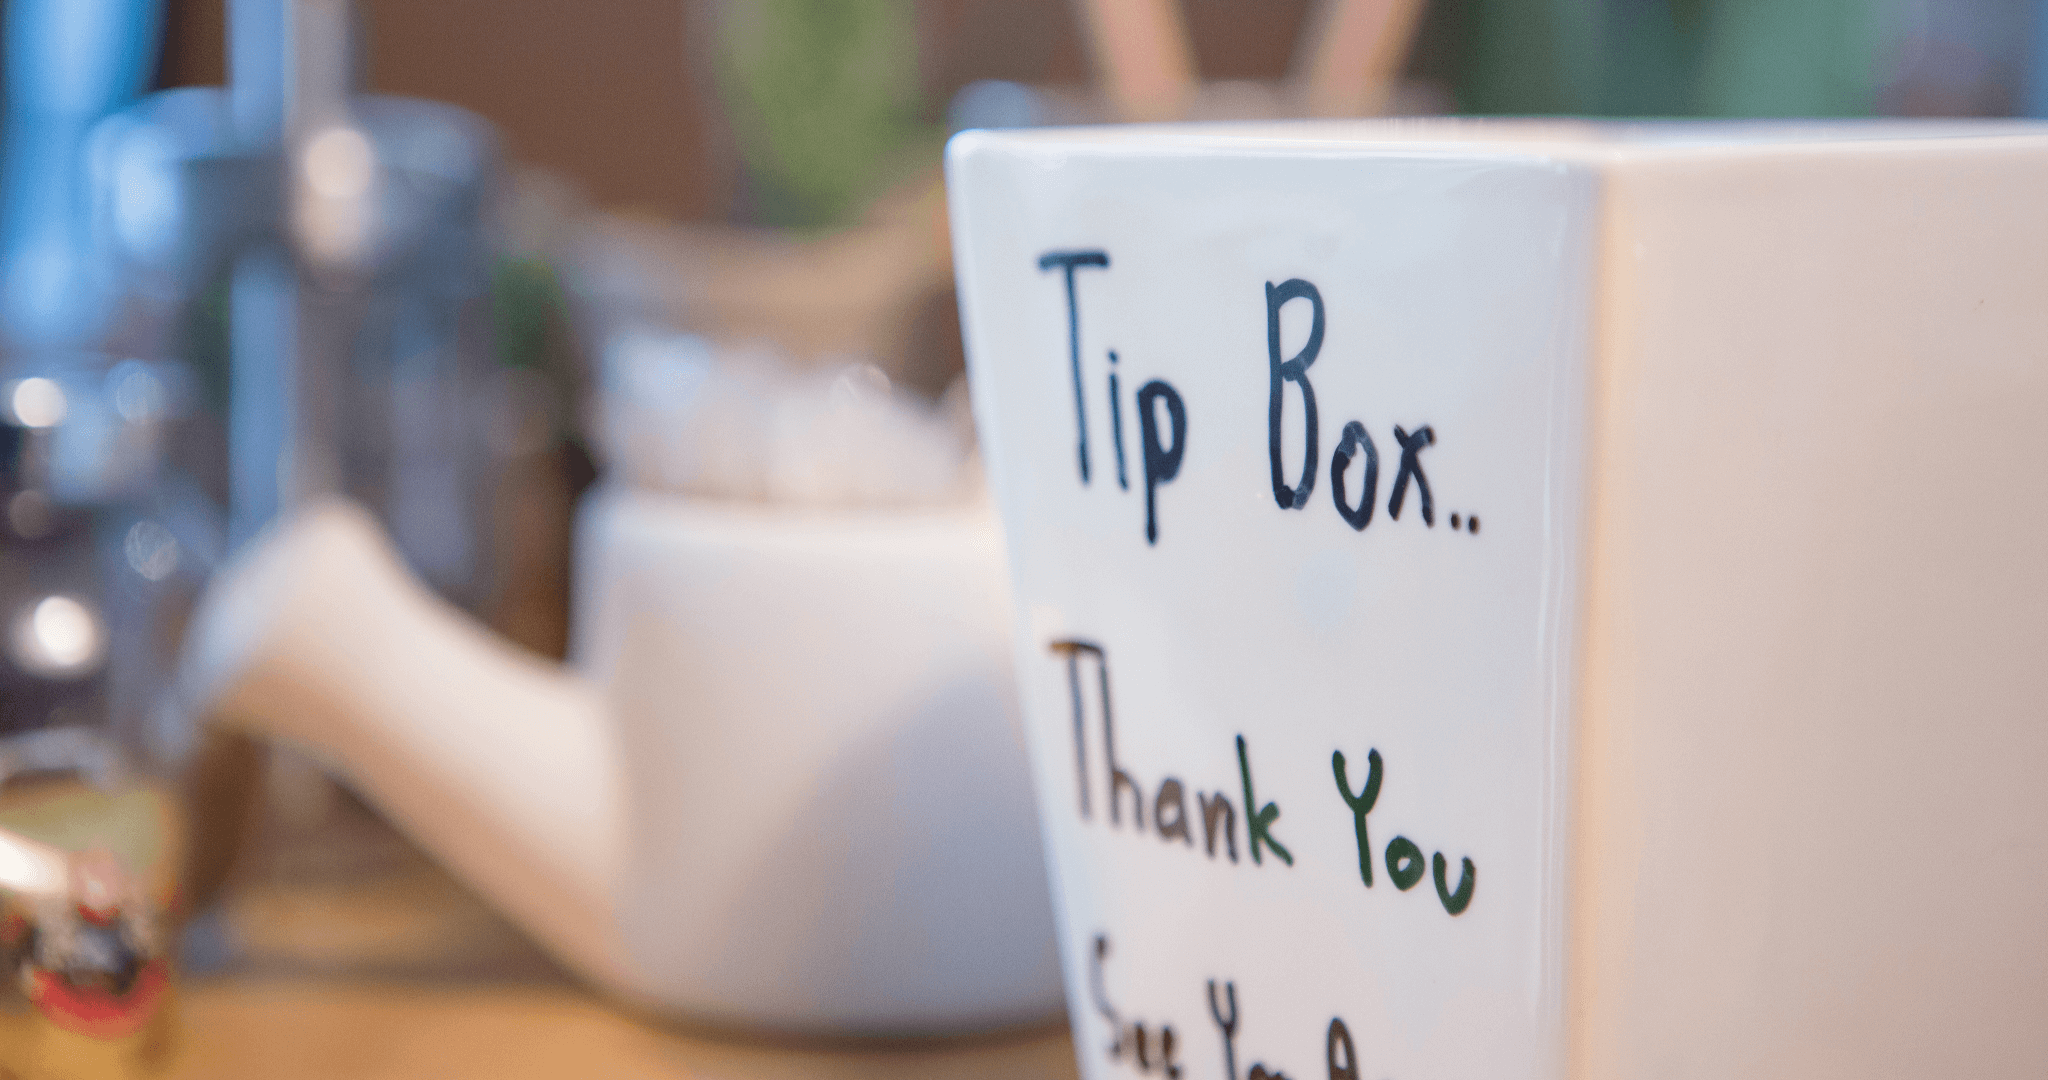 tip jar in coffee shop